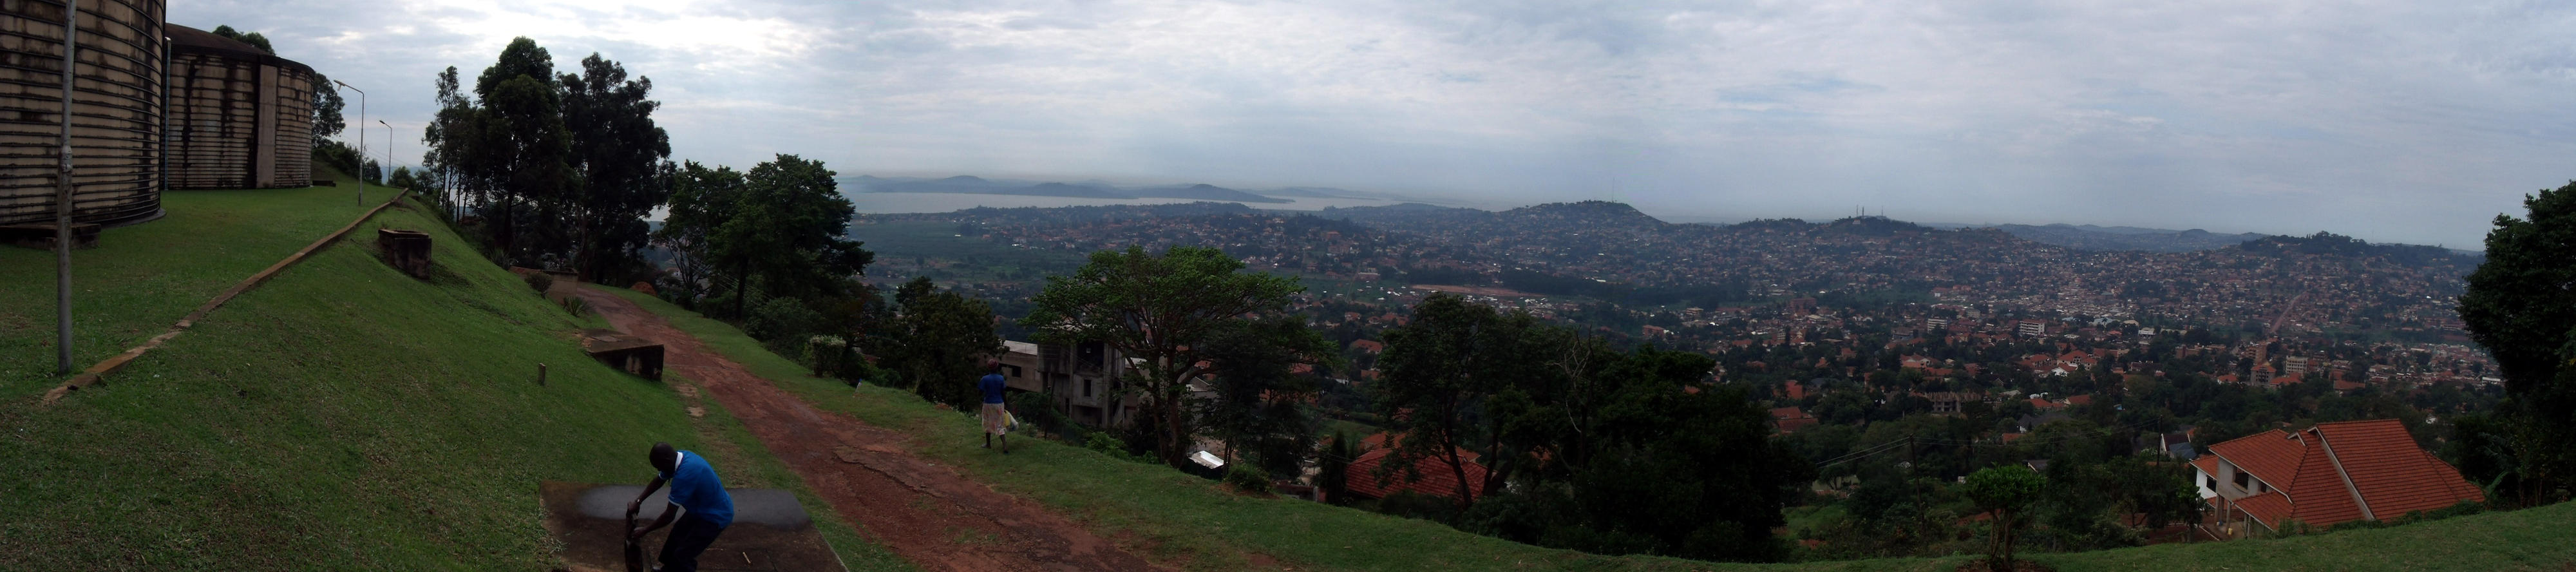 View of Kampala, the capital of Uganda